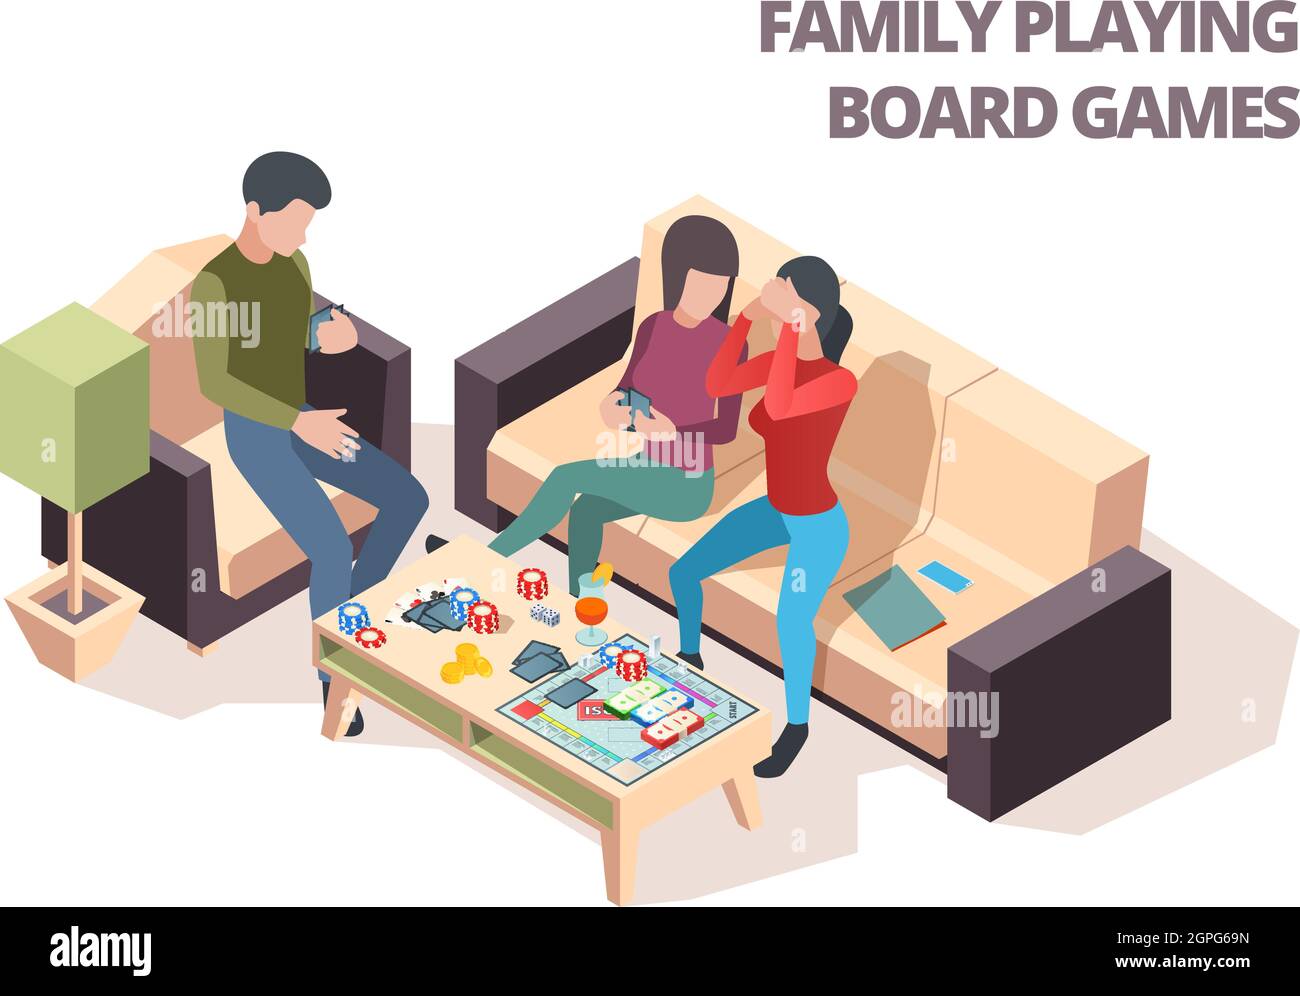 Jeu de société familial. Cartes Monopoly échecs maison loisirs jouant vecteur isométrique heureux personnes Illustration de Vecteur